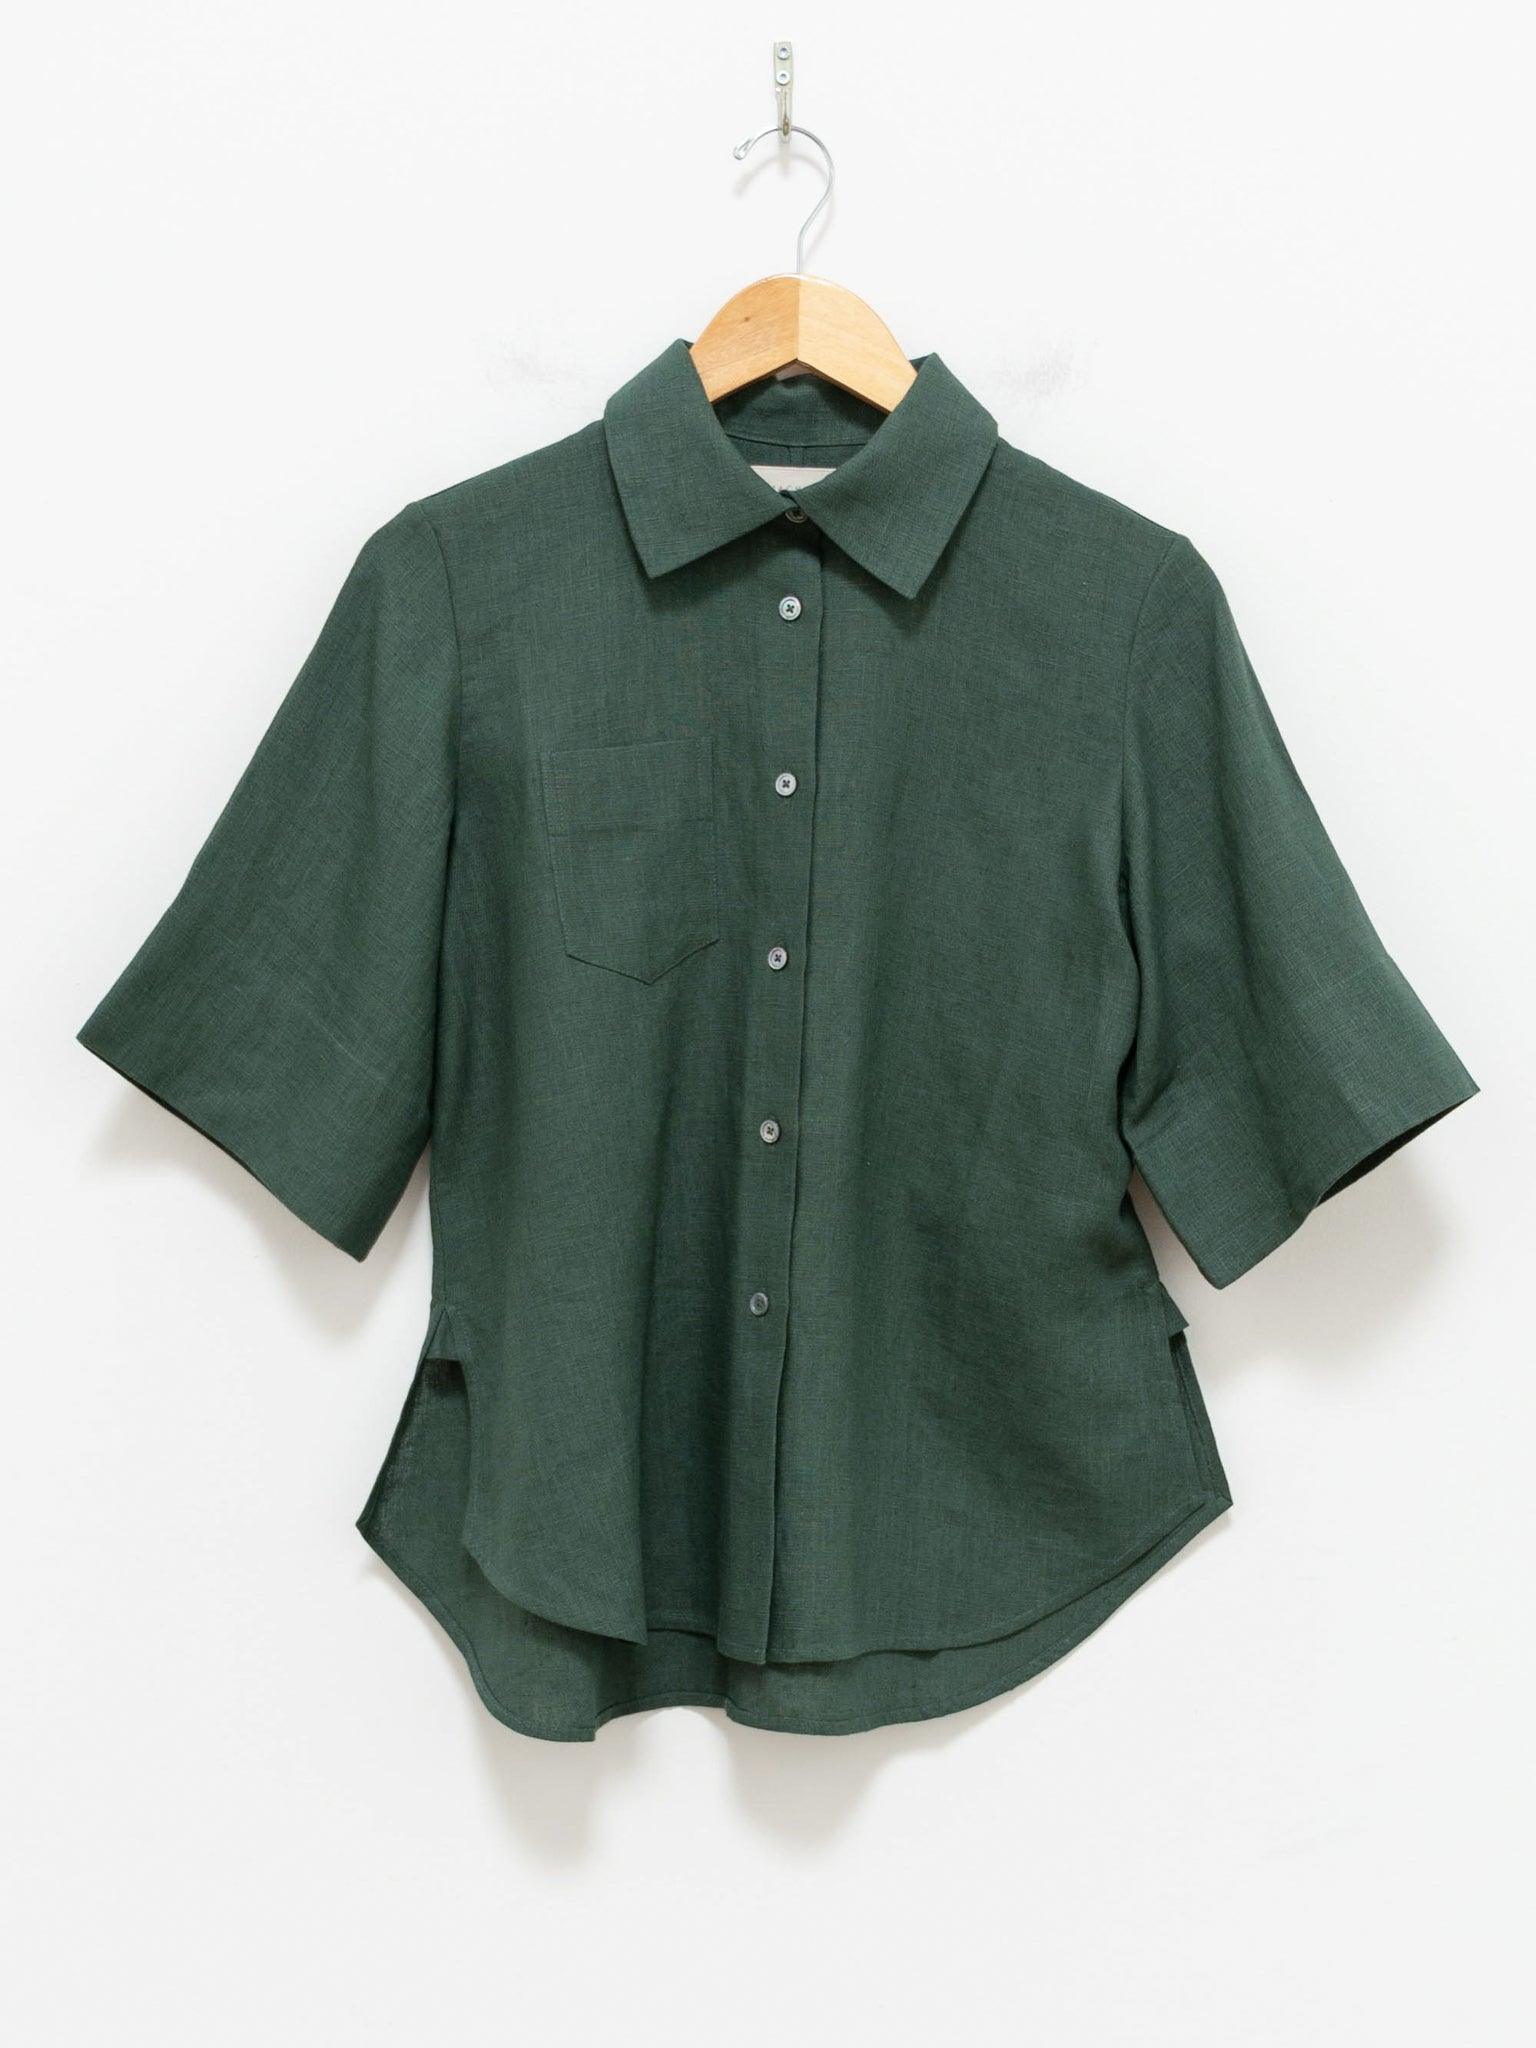 Namu Shop - Jan Machenhauer Clara Shirt - Forest Linen